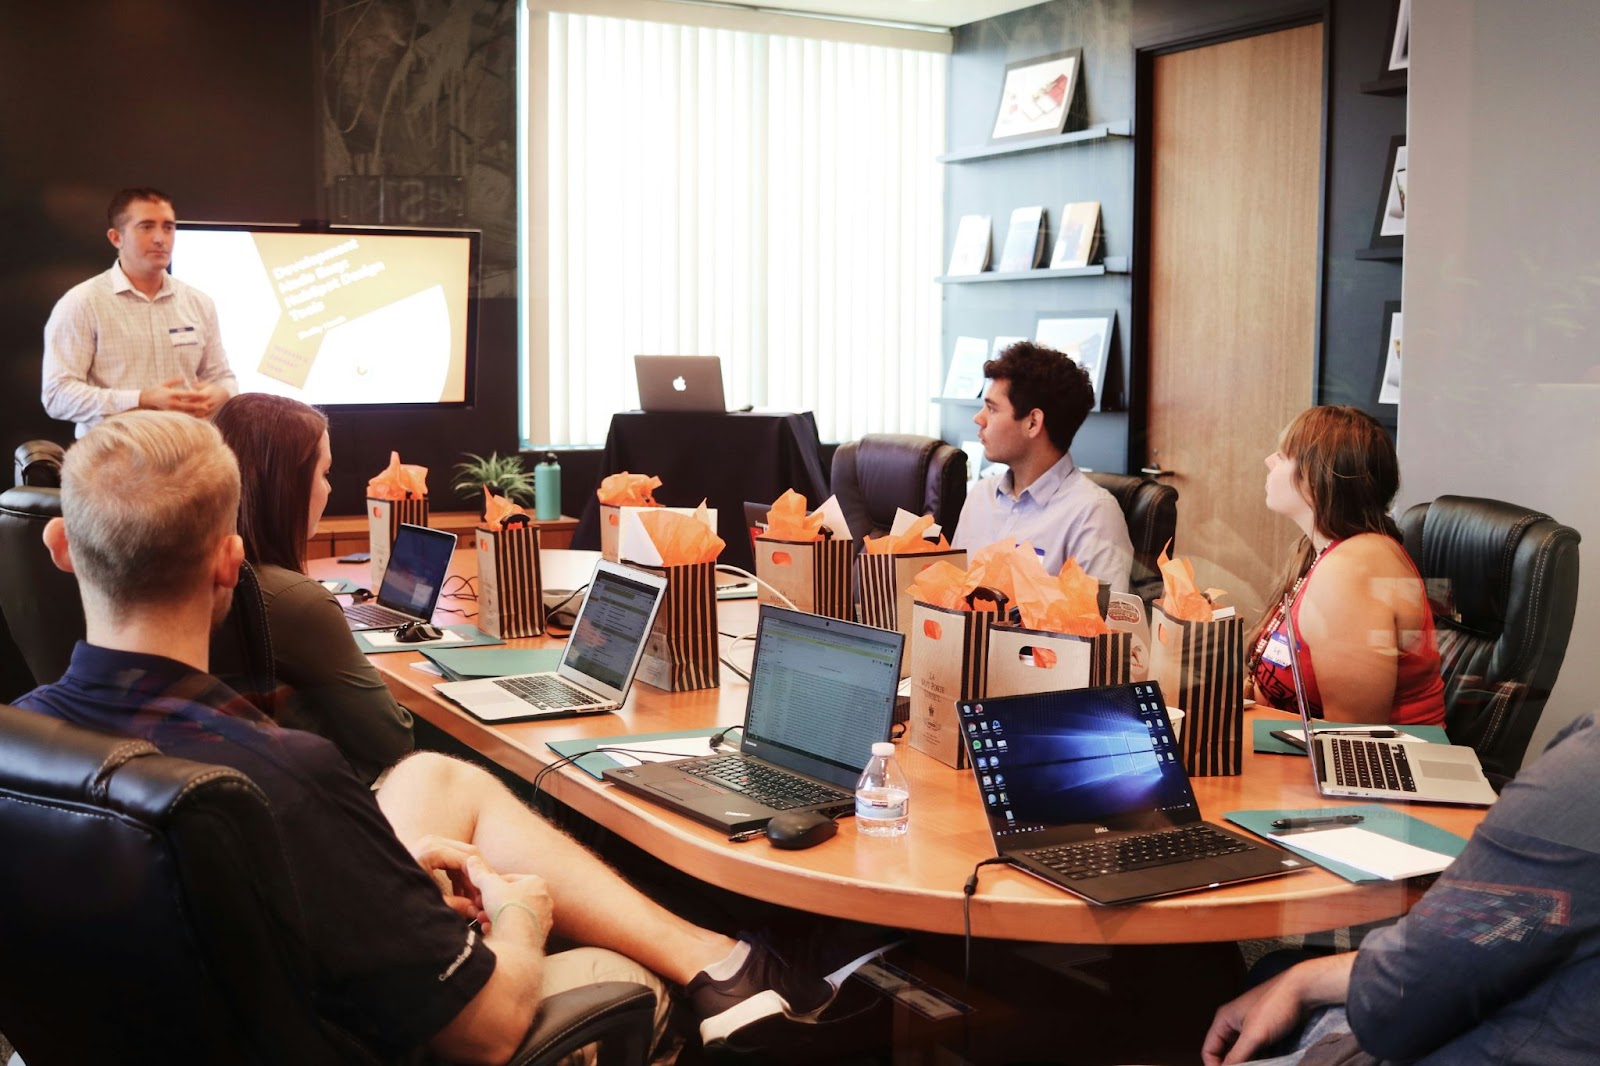 Personas en una sala de conferencias participando en una presentación, con laptops y materiales de trabajo sobre la mesa